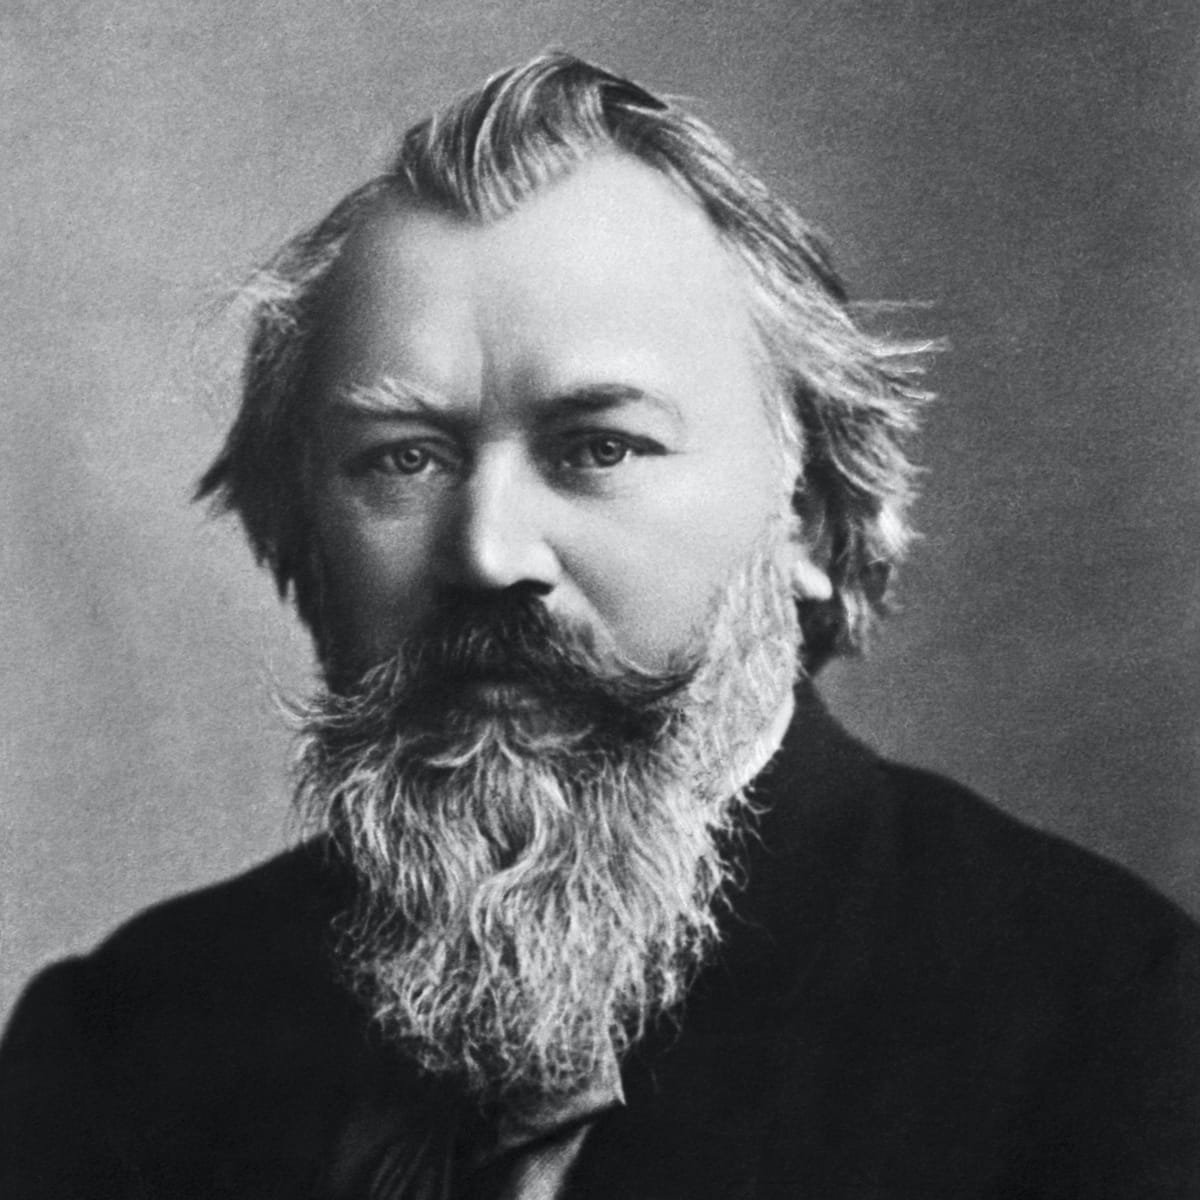 Johannes Brahms, composer